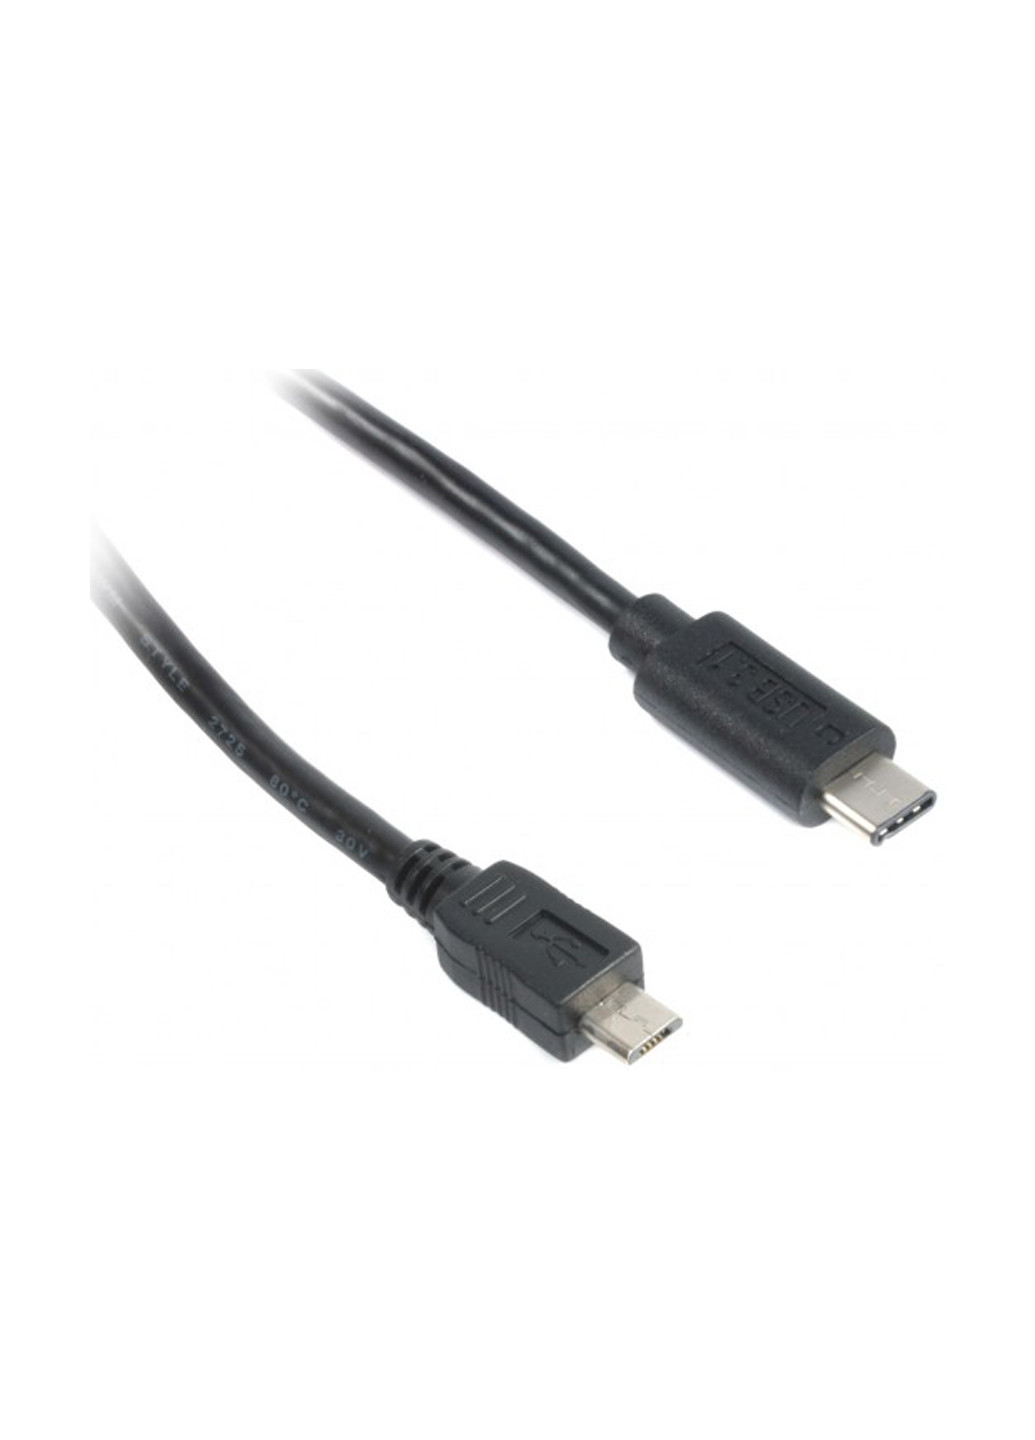 Кабель синхронізації USB 2.0 Micro BM-тато / C-тато, 1.8 м, преміум (CCP-USB 2-mBMCM-6) Cablexpert usb 2.0 micro bm-папа/c-папа, 1.8 м, премиум (ccp-usb 2-mbmcm-6) (137550269)